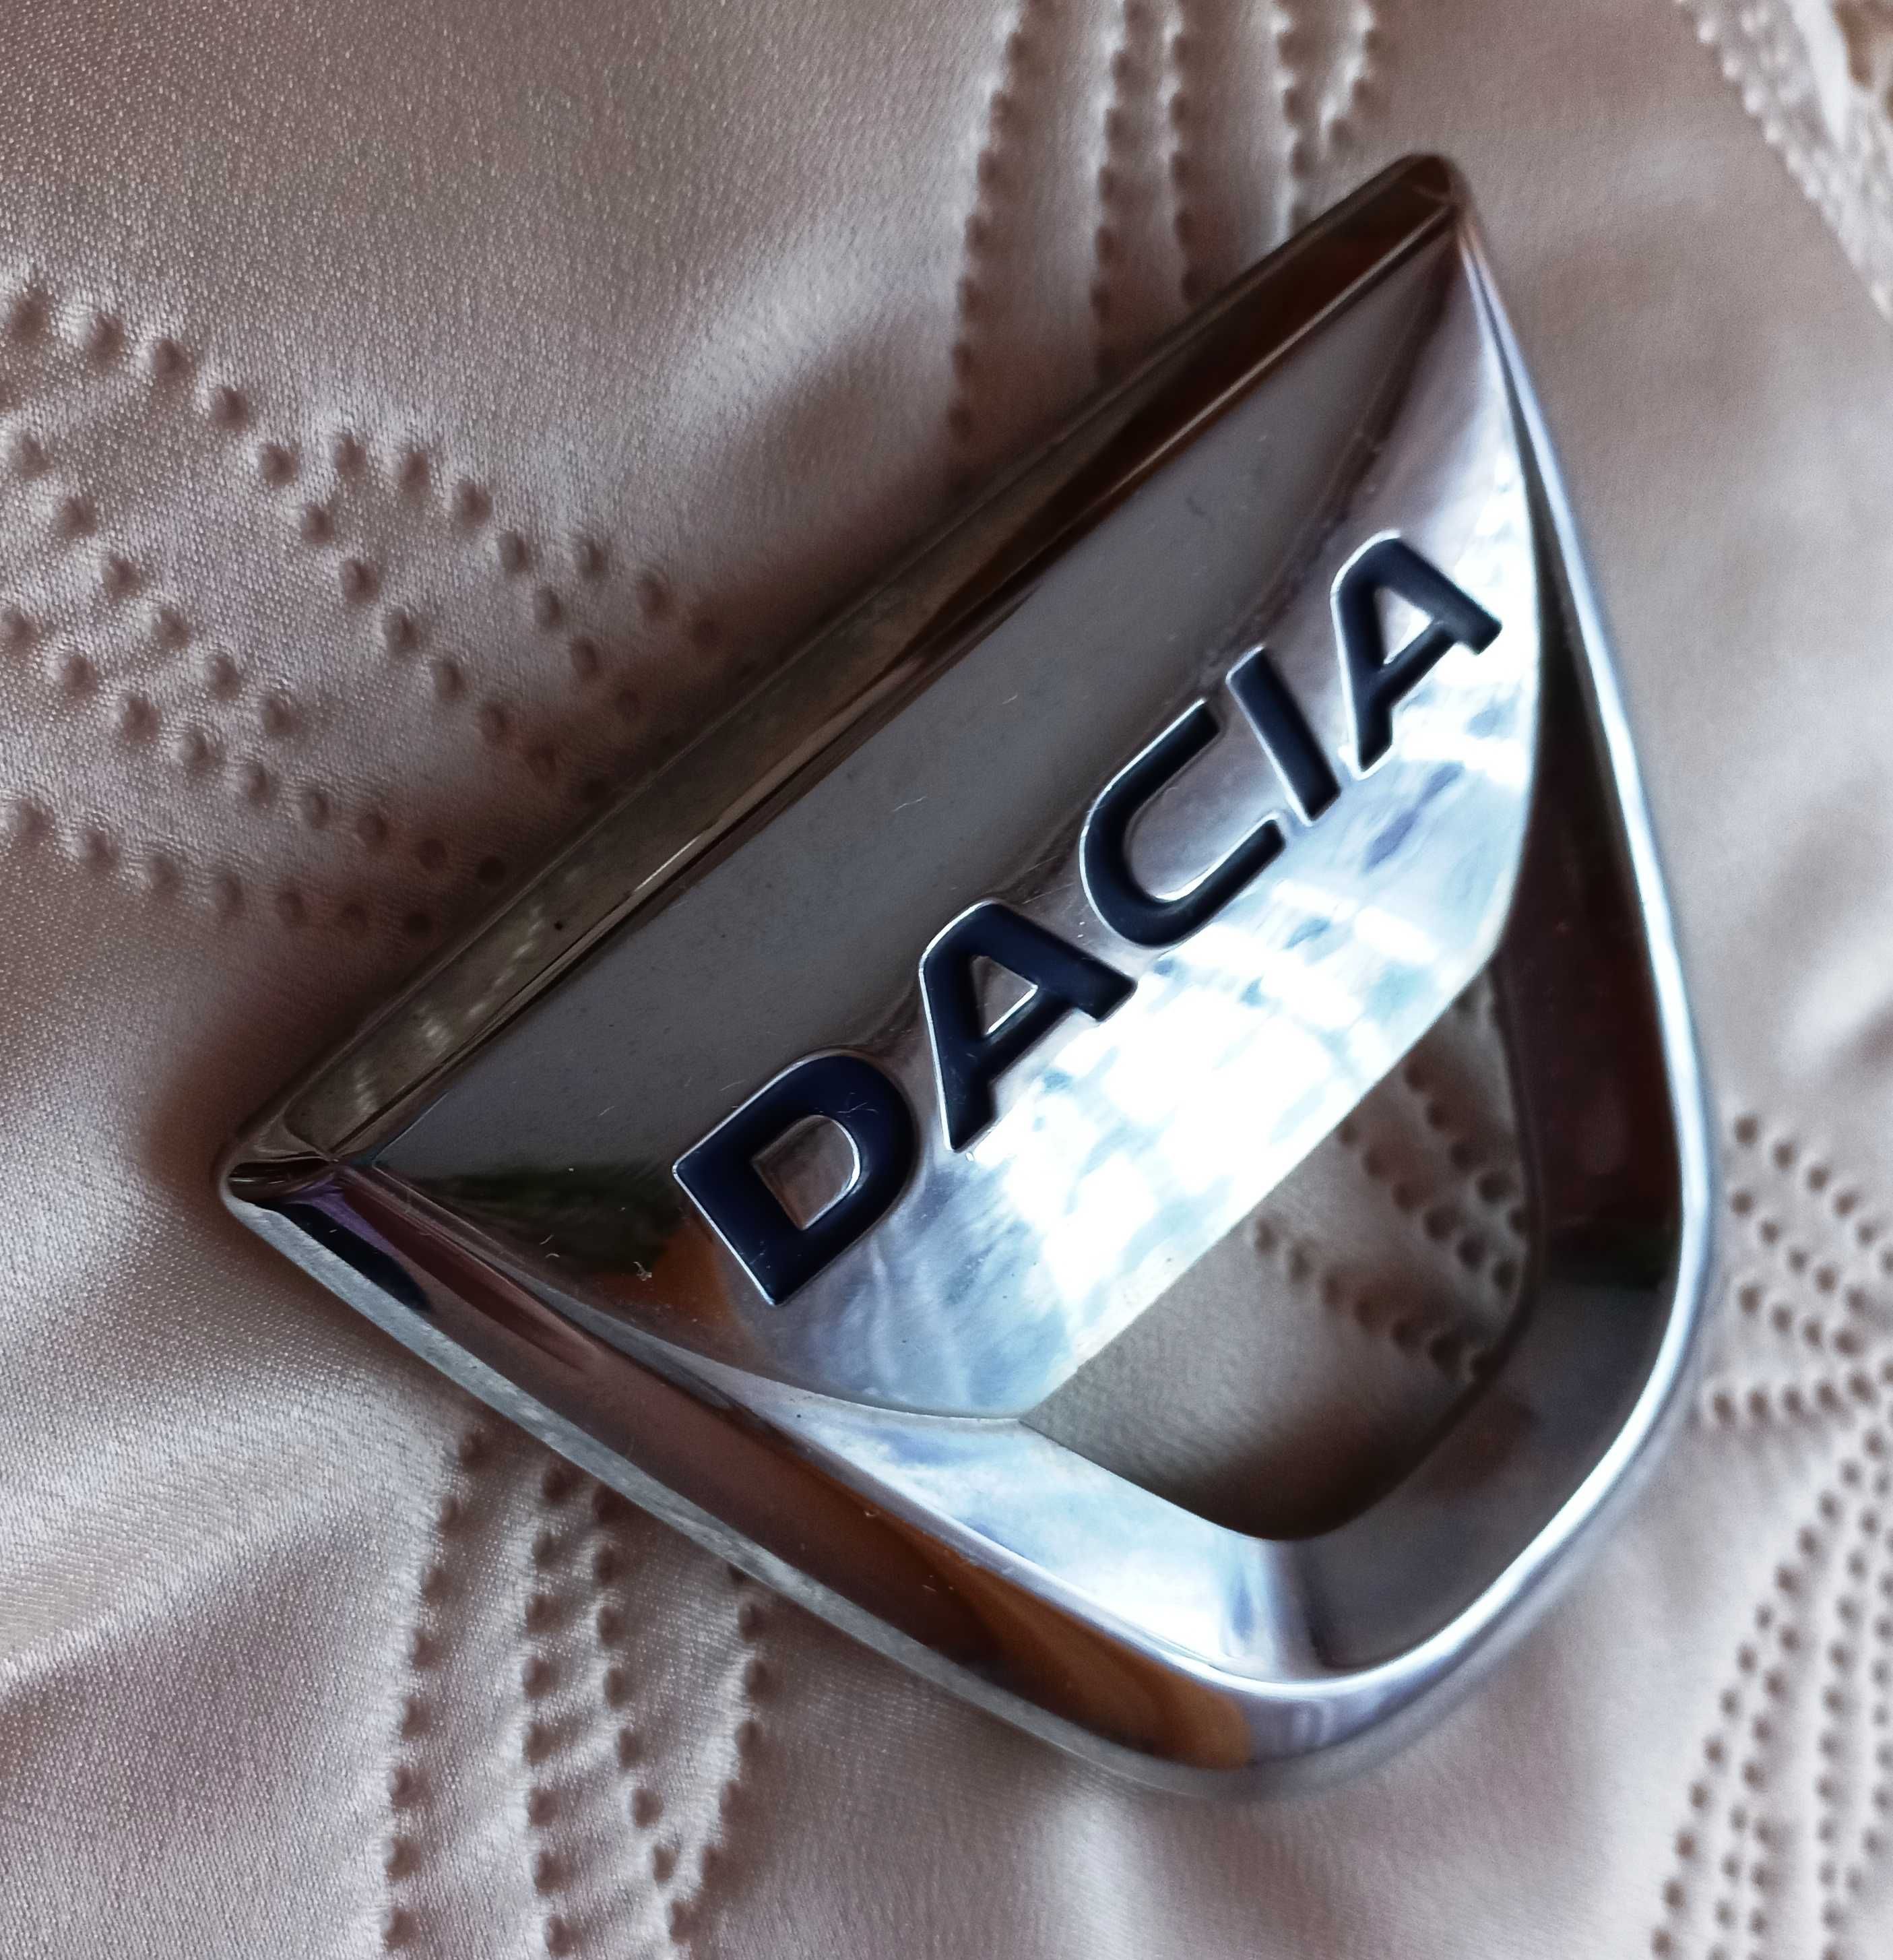 Znaczek emblemat Dacia - numer części podany - dla kolekcjonerów